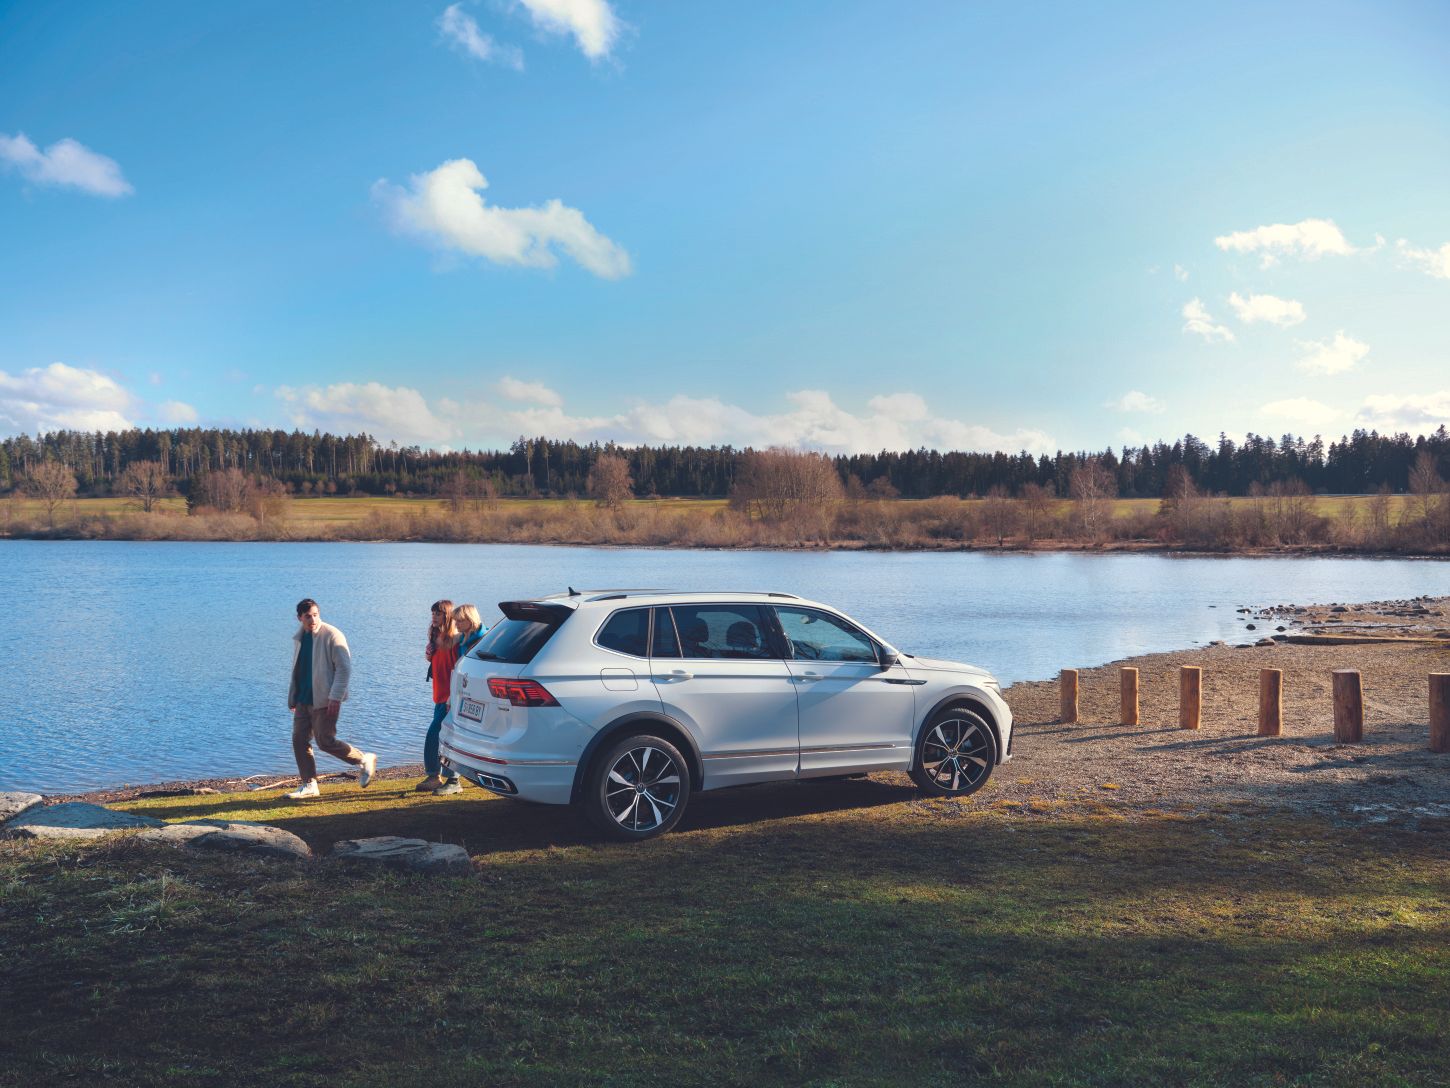 VW Tiguan Allspace steht an einem See, dahinter gehen drei Personen vorbei